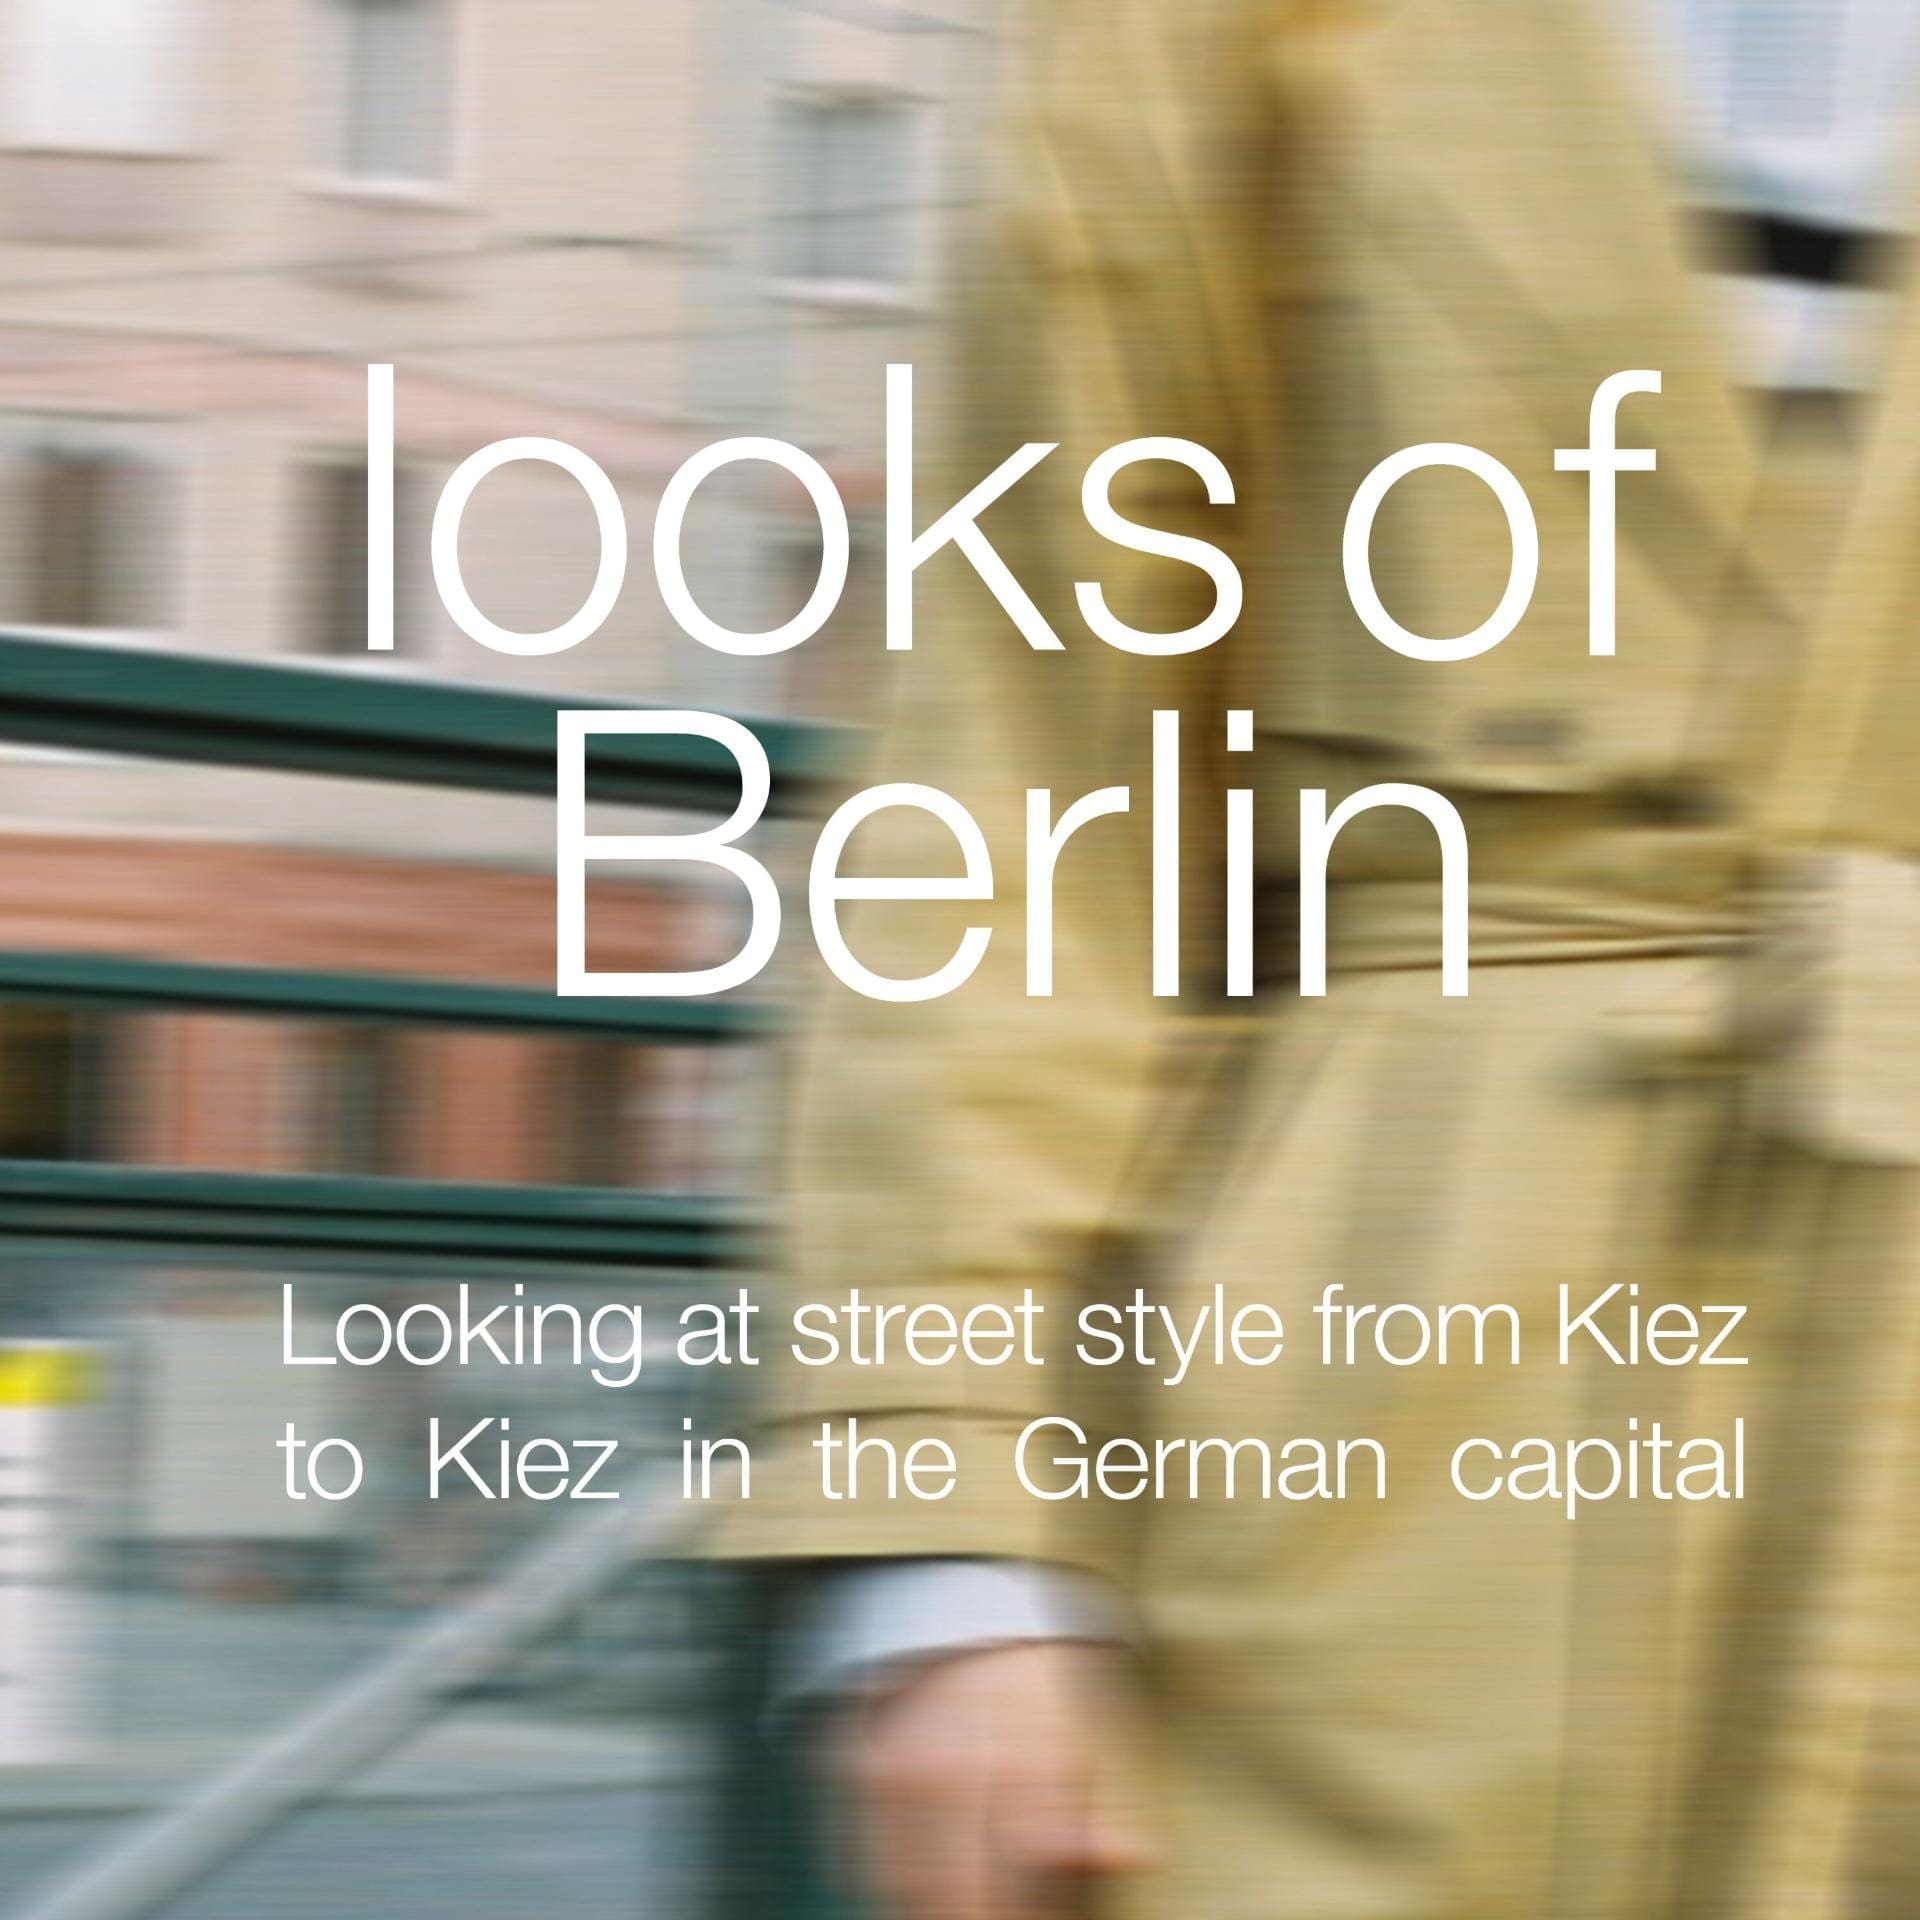 Presenting: Looks of Berlin